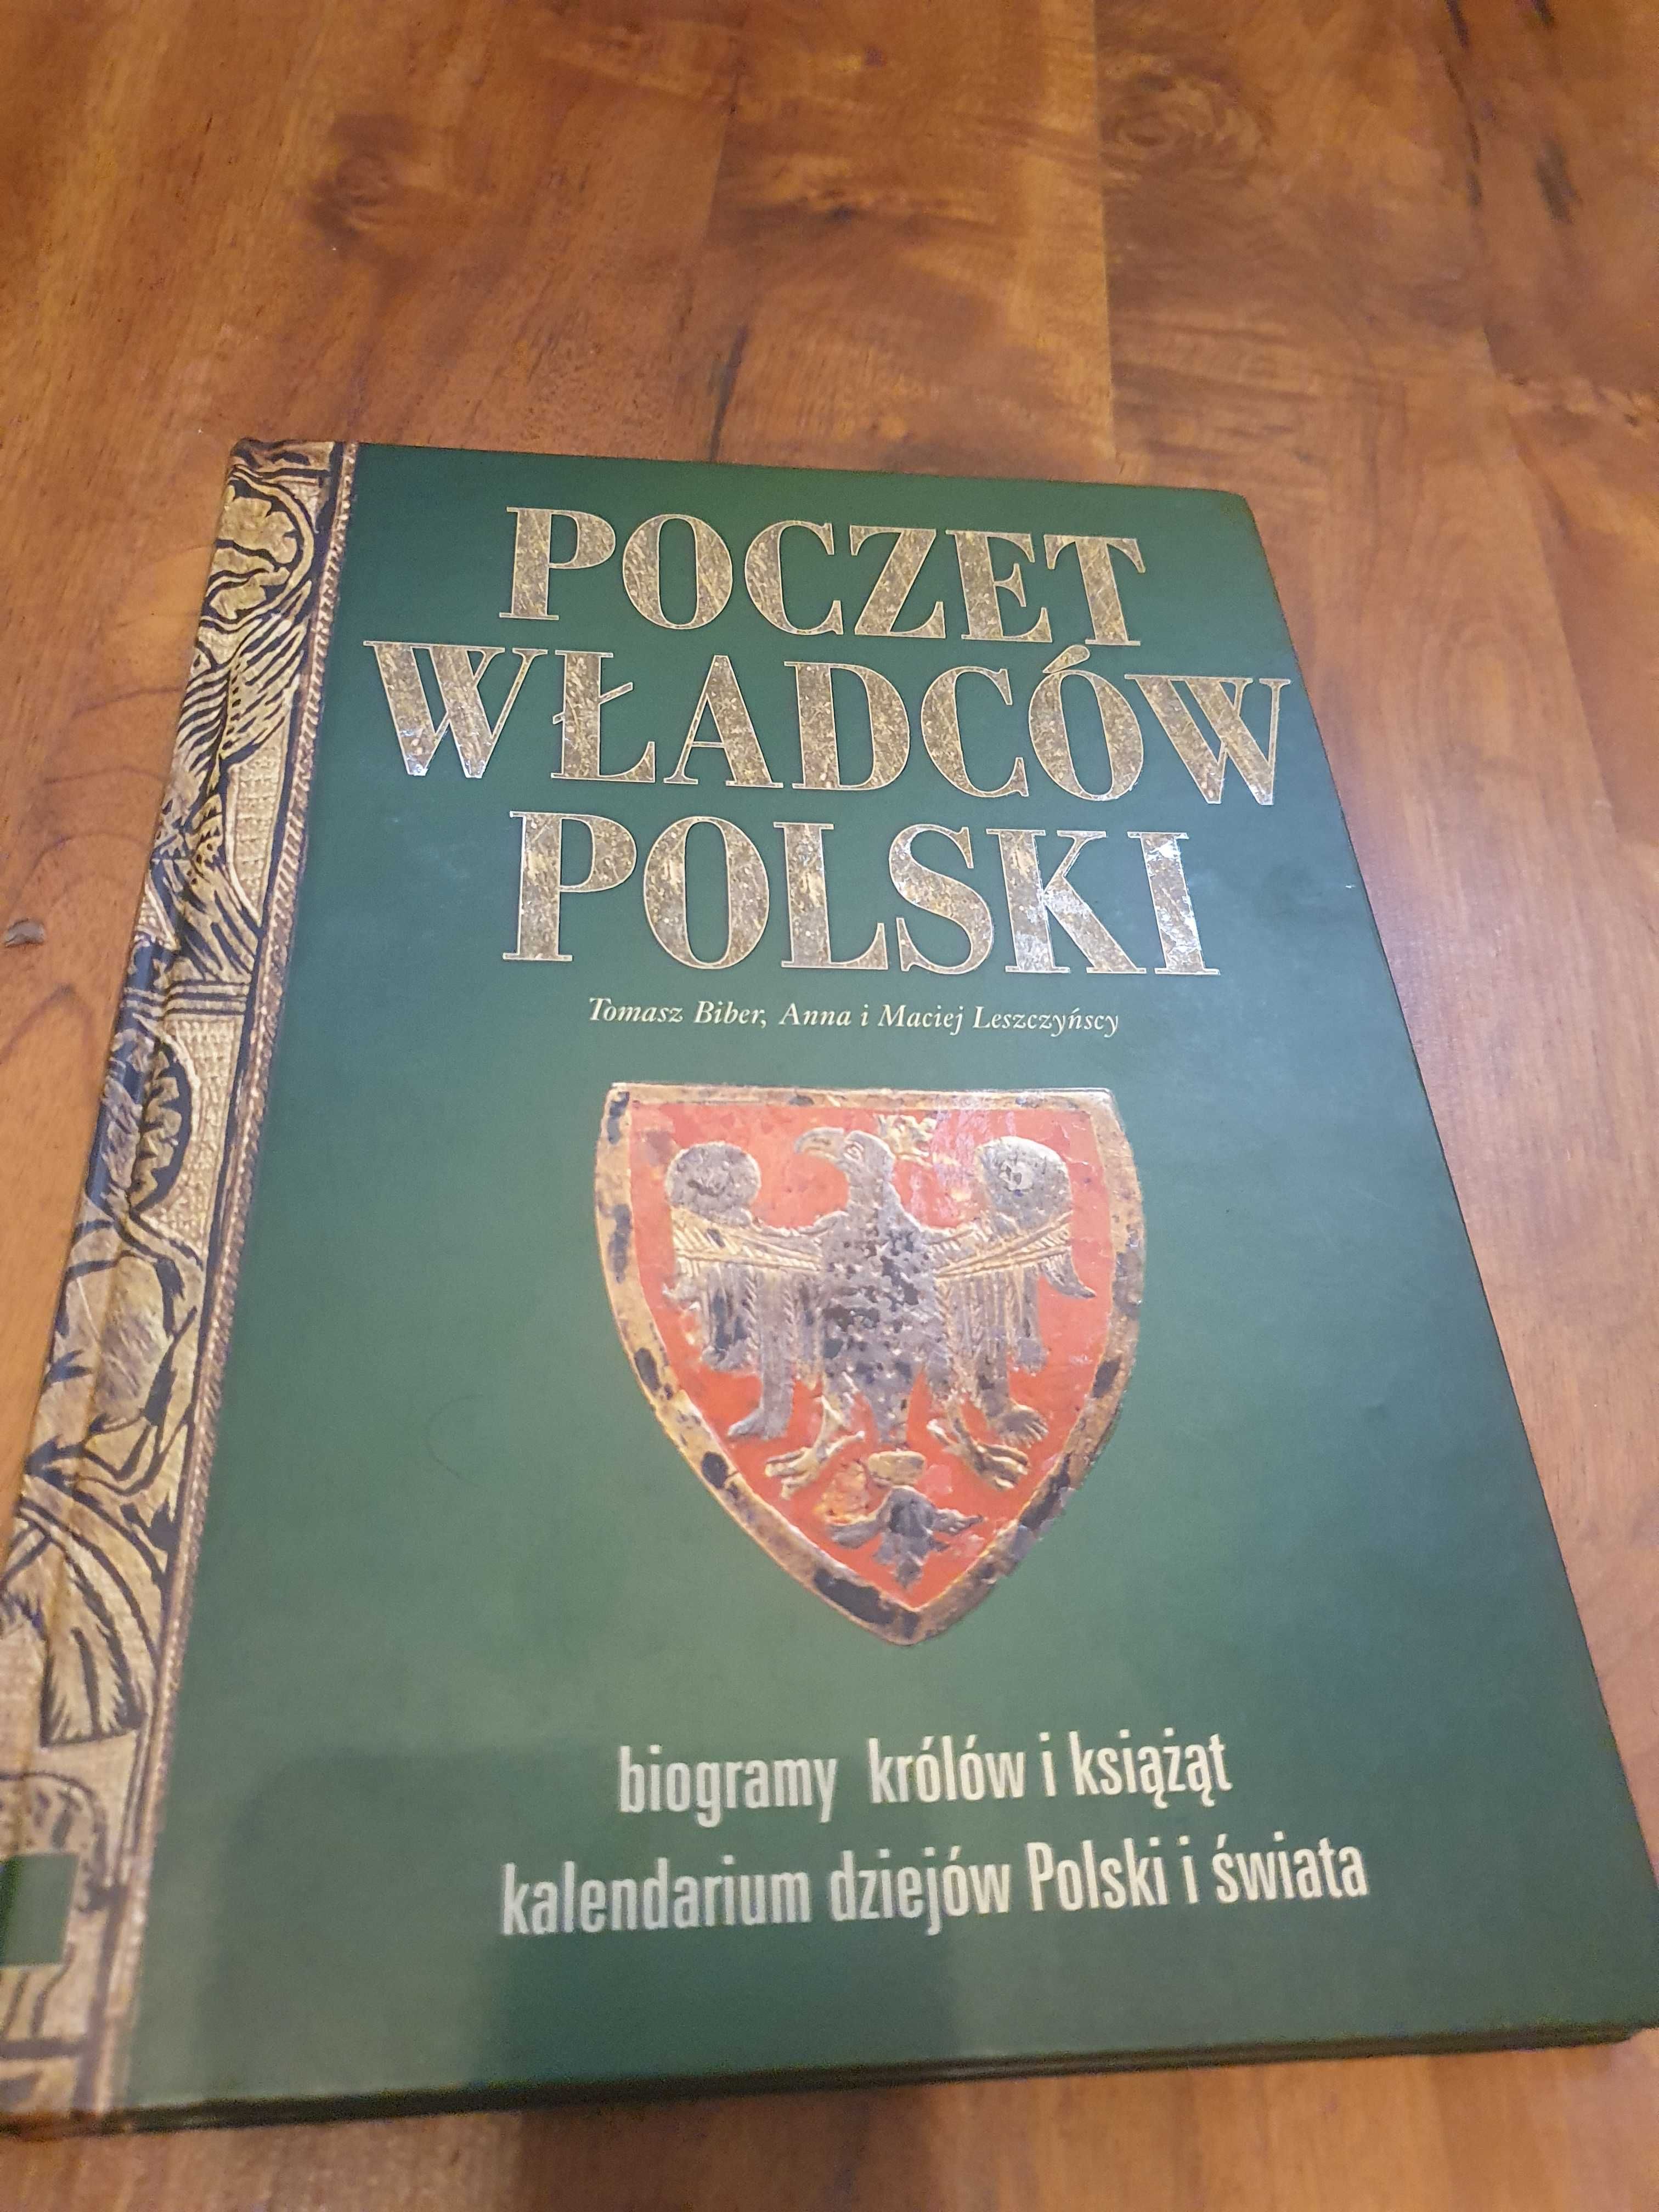 Poczet władców Polski książka